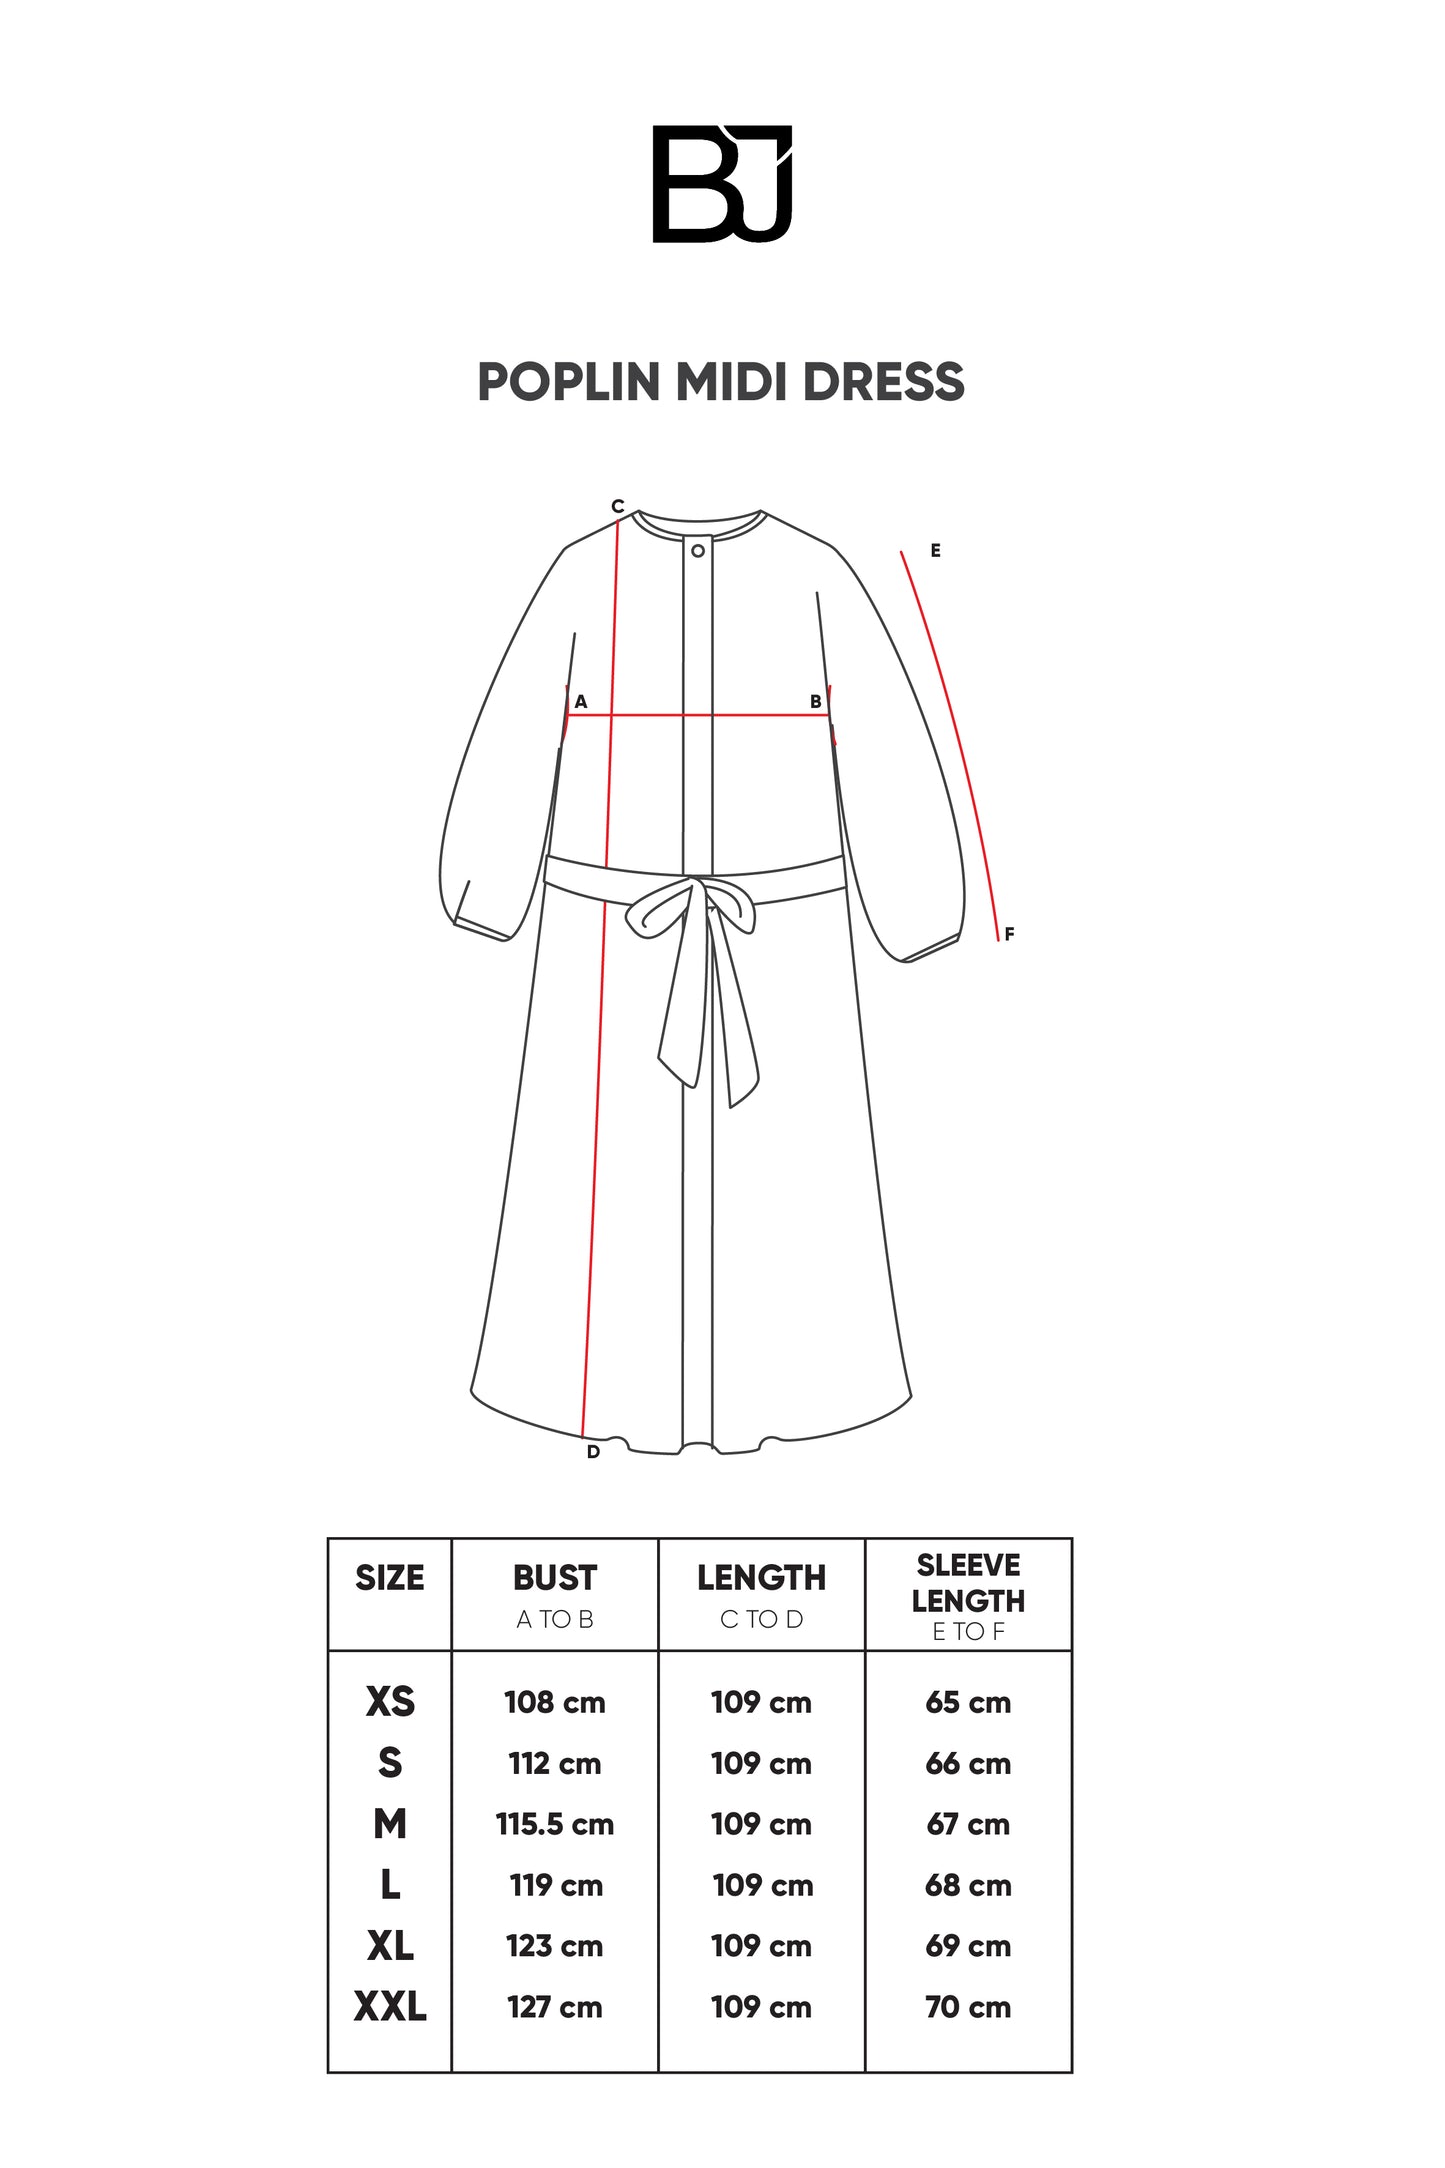 Poplin Midi Dress - Serenity